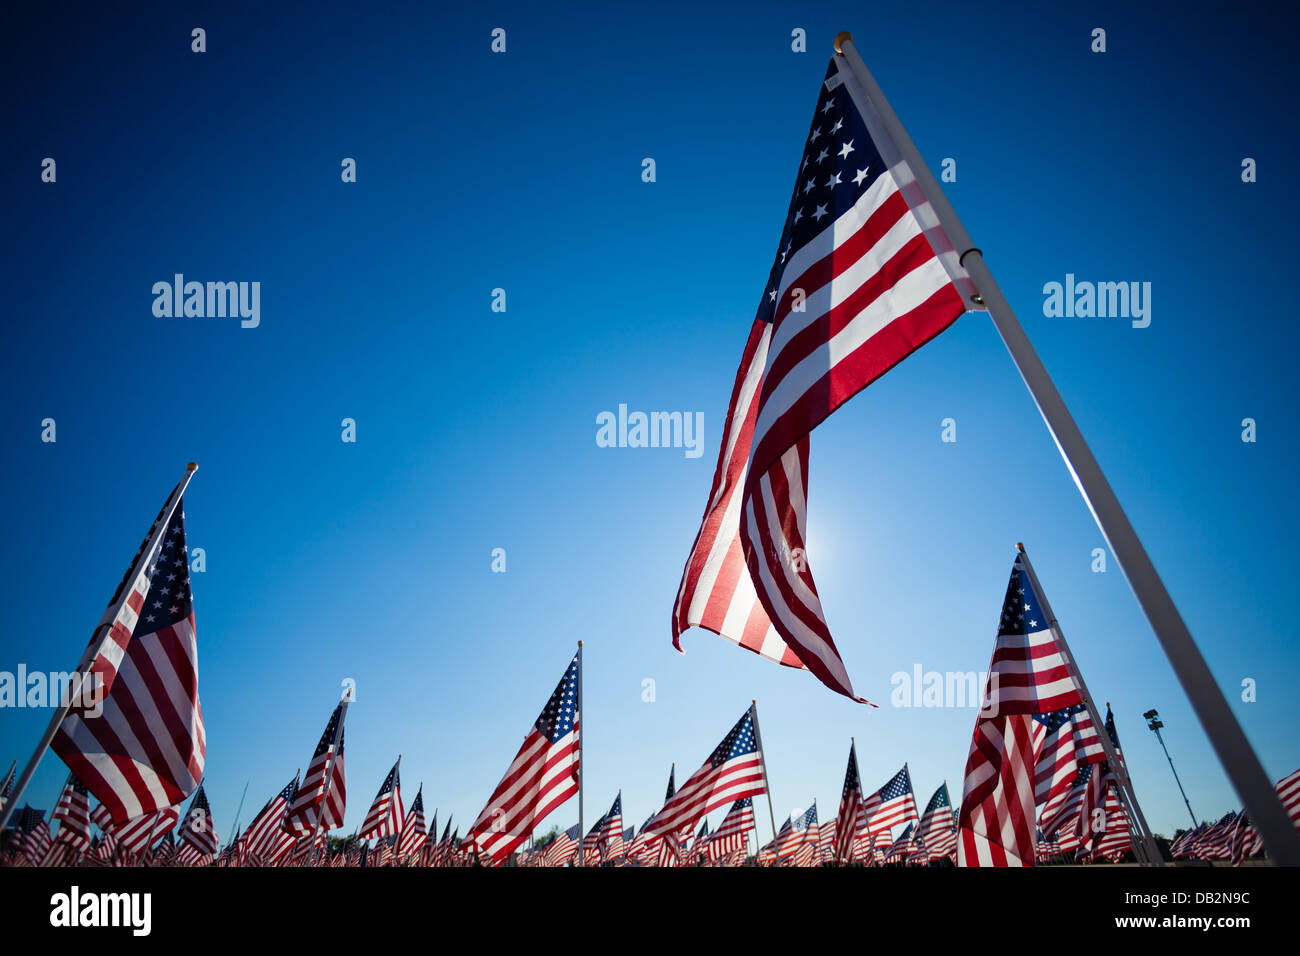 Un affichage de nombreux drapeaux américain avec un fond bleu ciel Banque D'Images